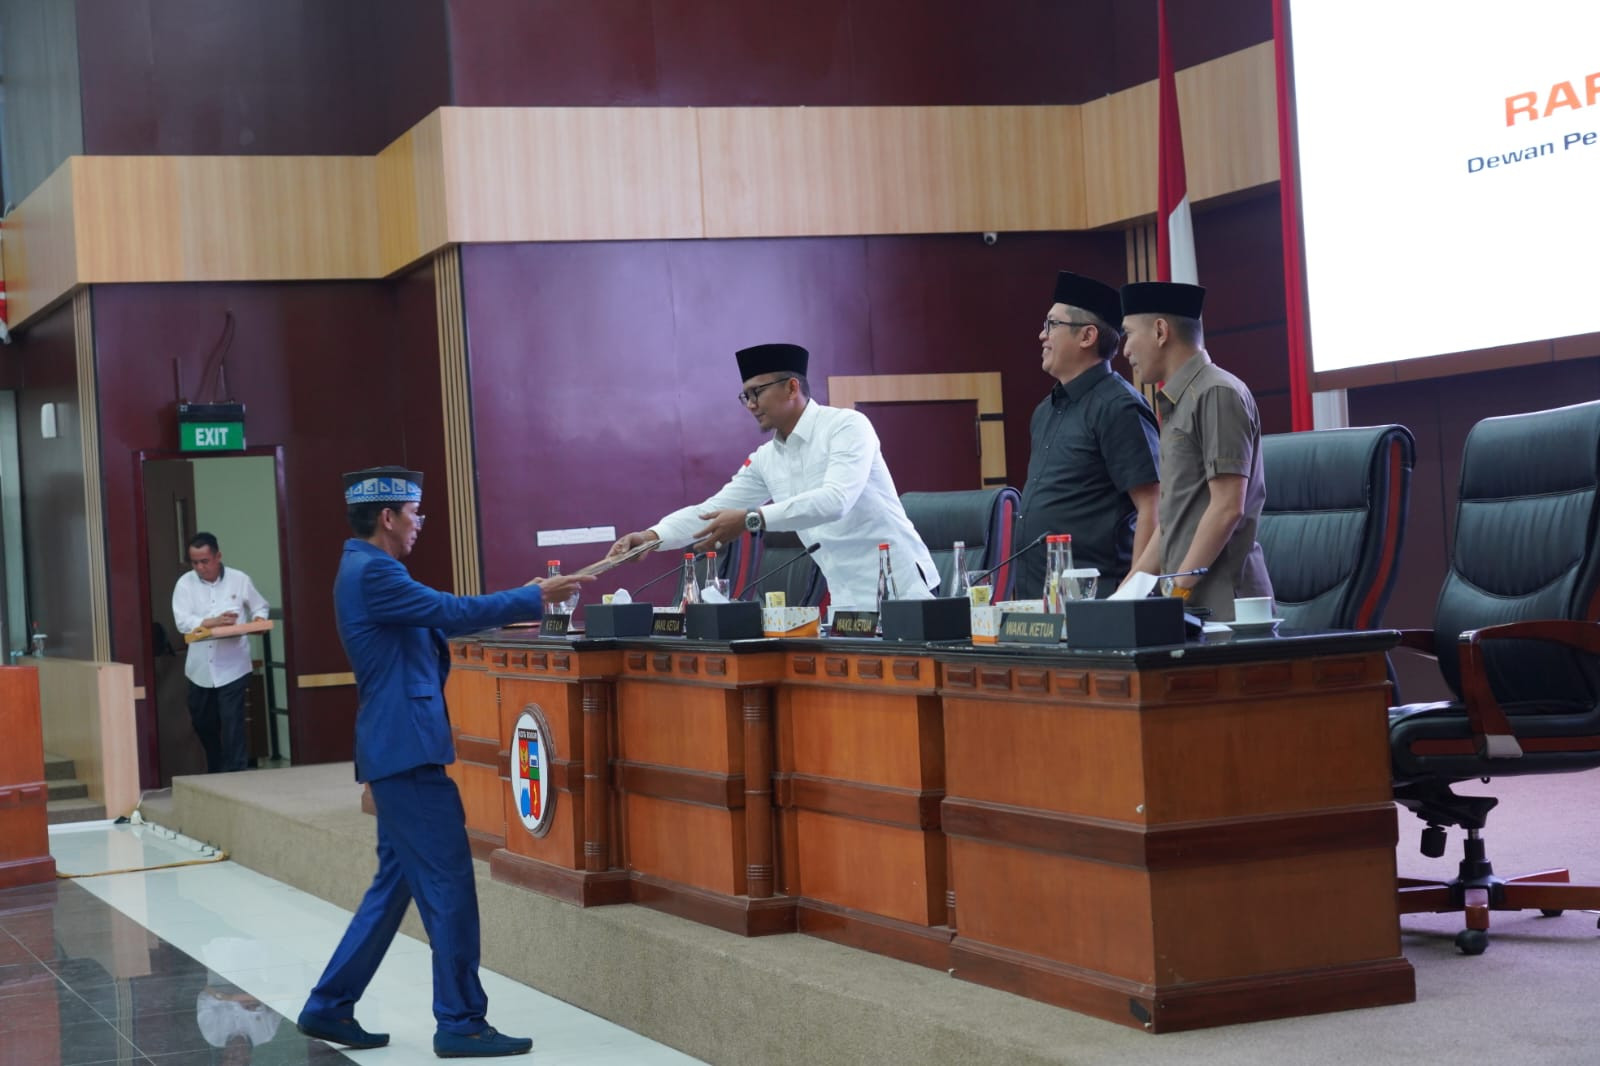 Tok! DPRD Kota Bogor Lanjutkan Pembahasan Raperda Fasilitasi Pelayanan Haji